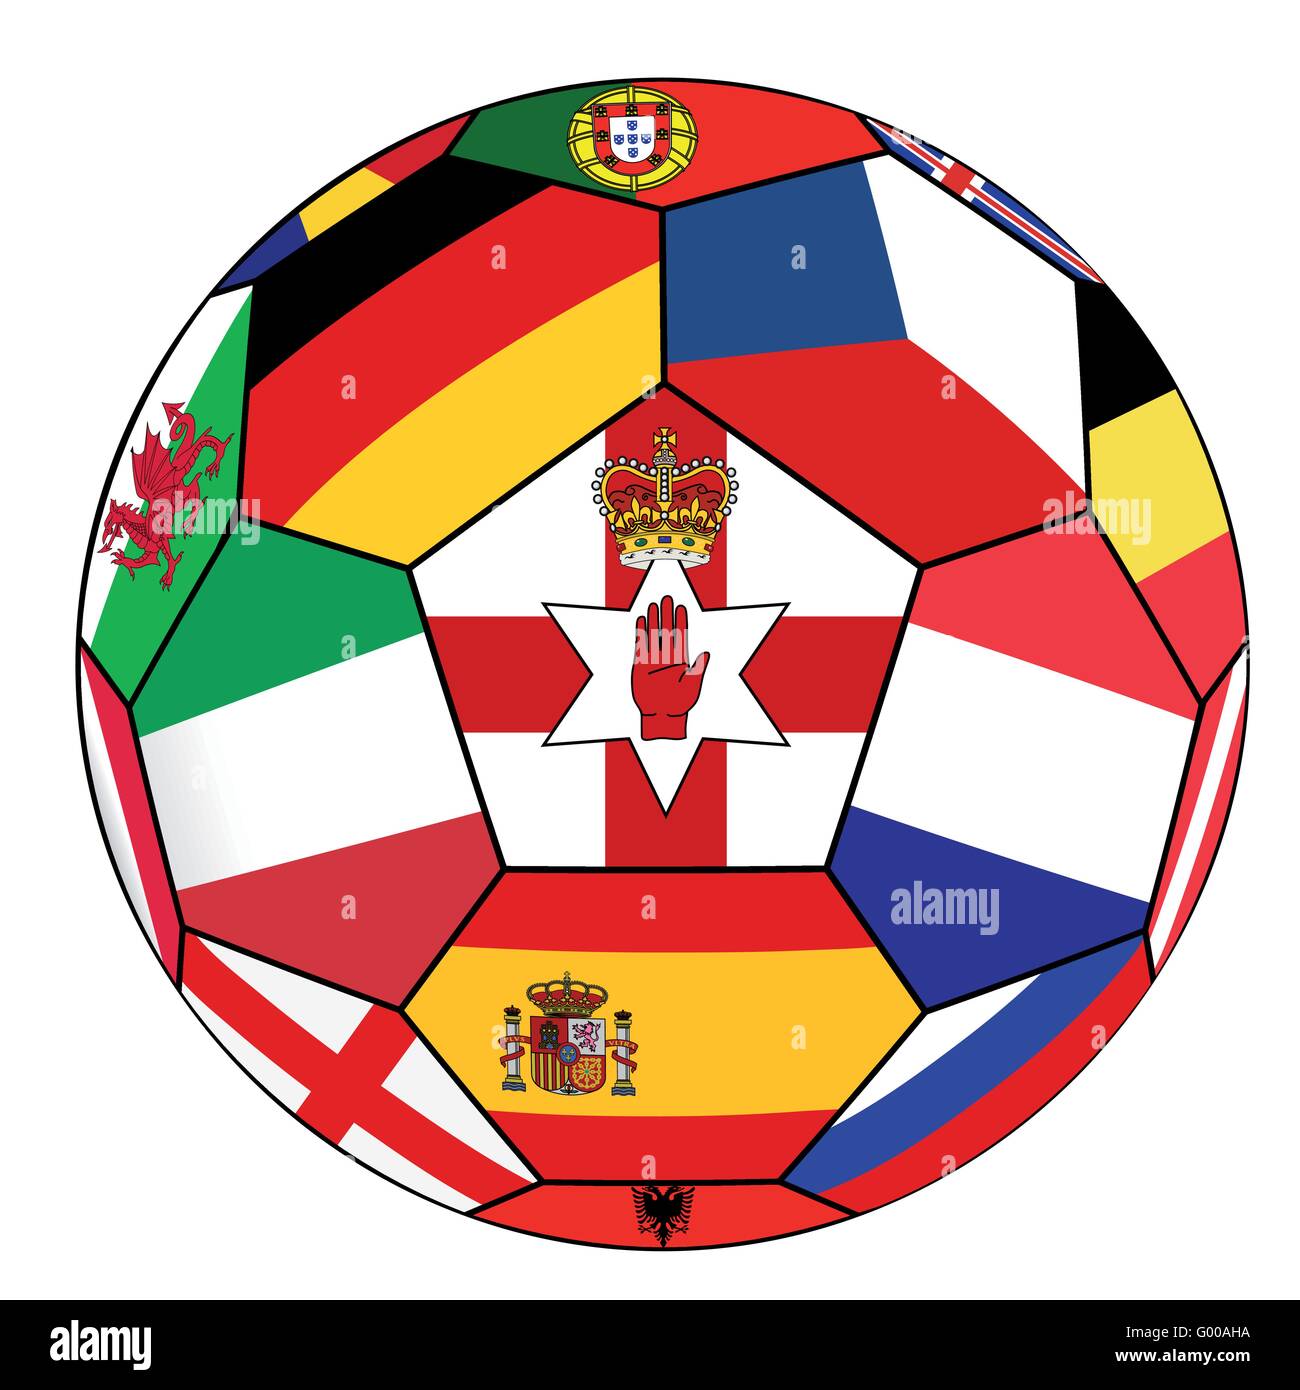 Pallone da calcio con la bandiera del Nord Irlanda nel centro Illustrazione Vettoriale